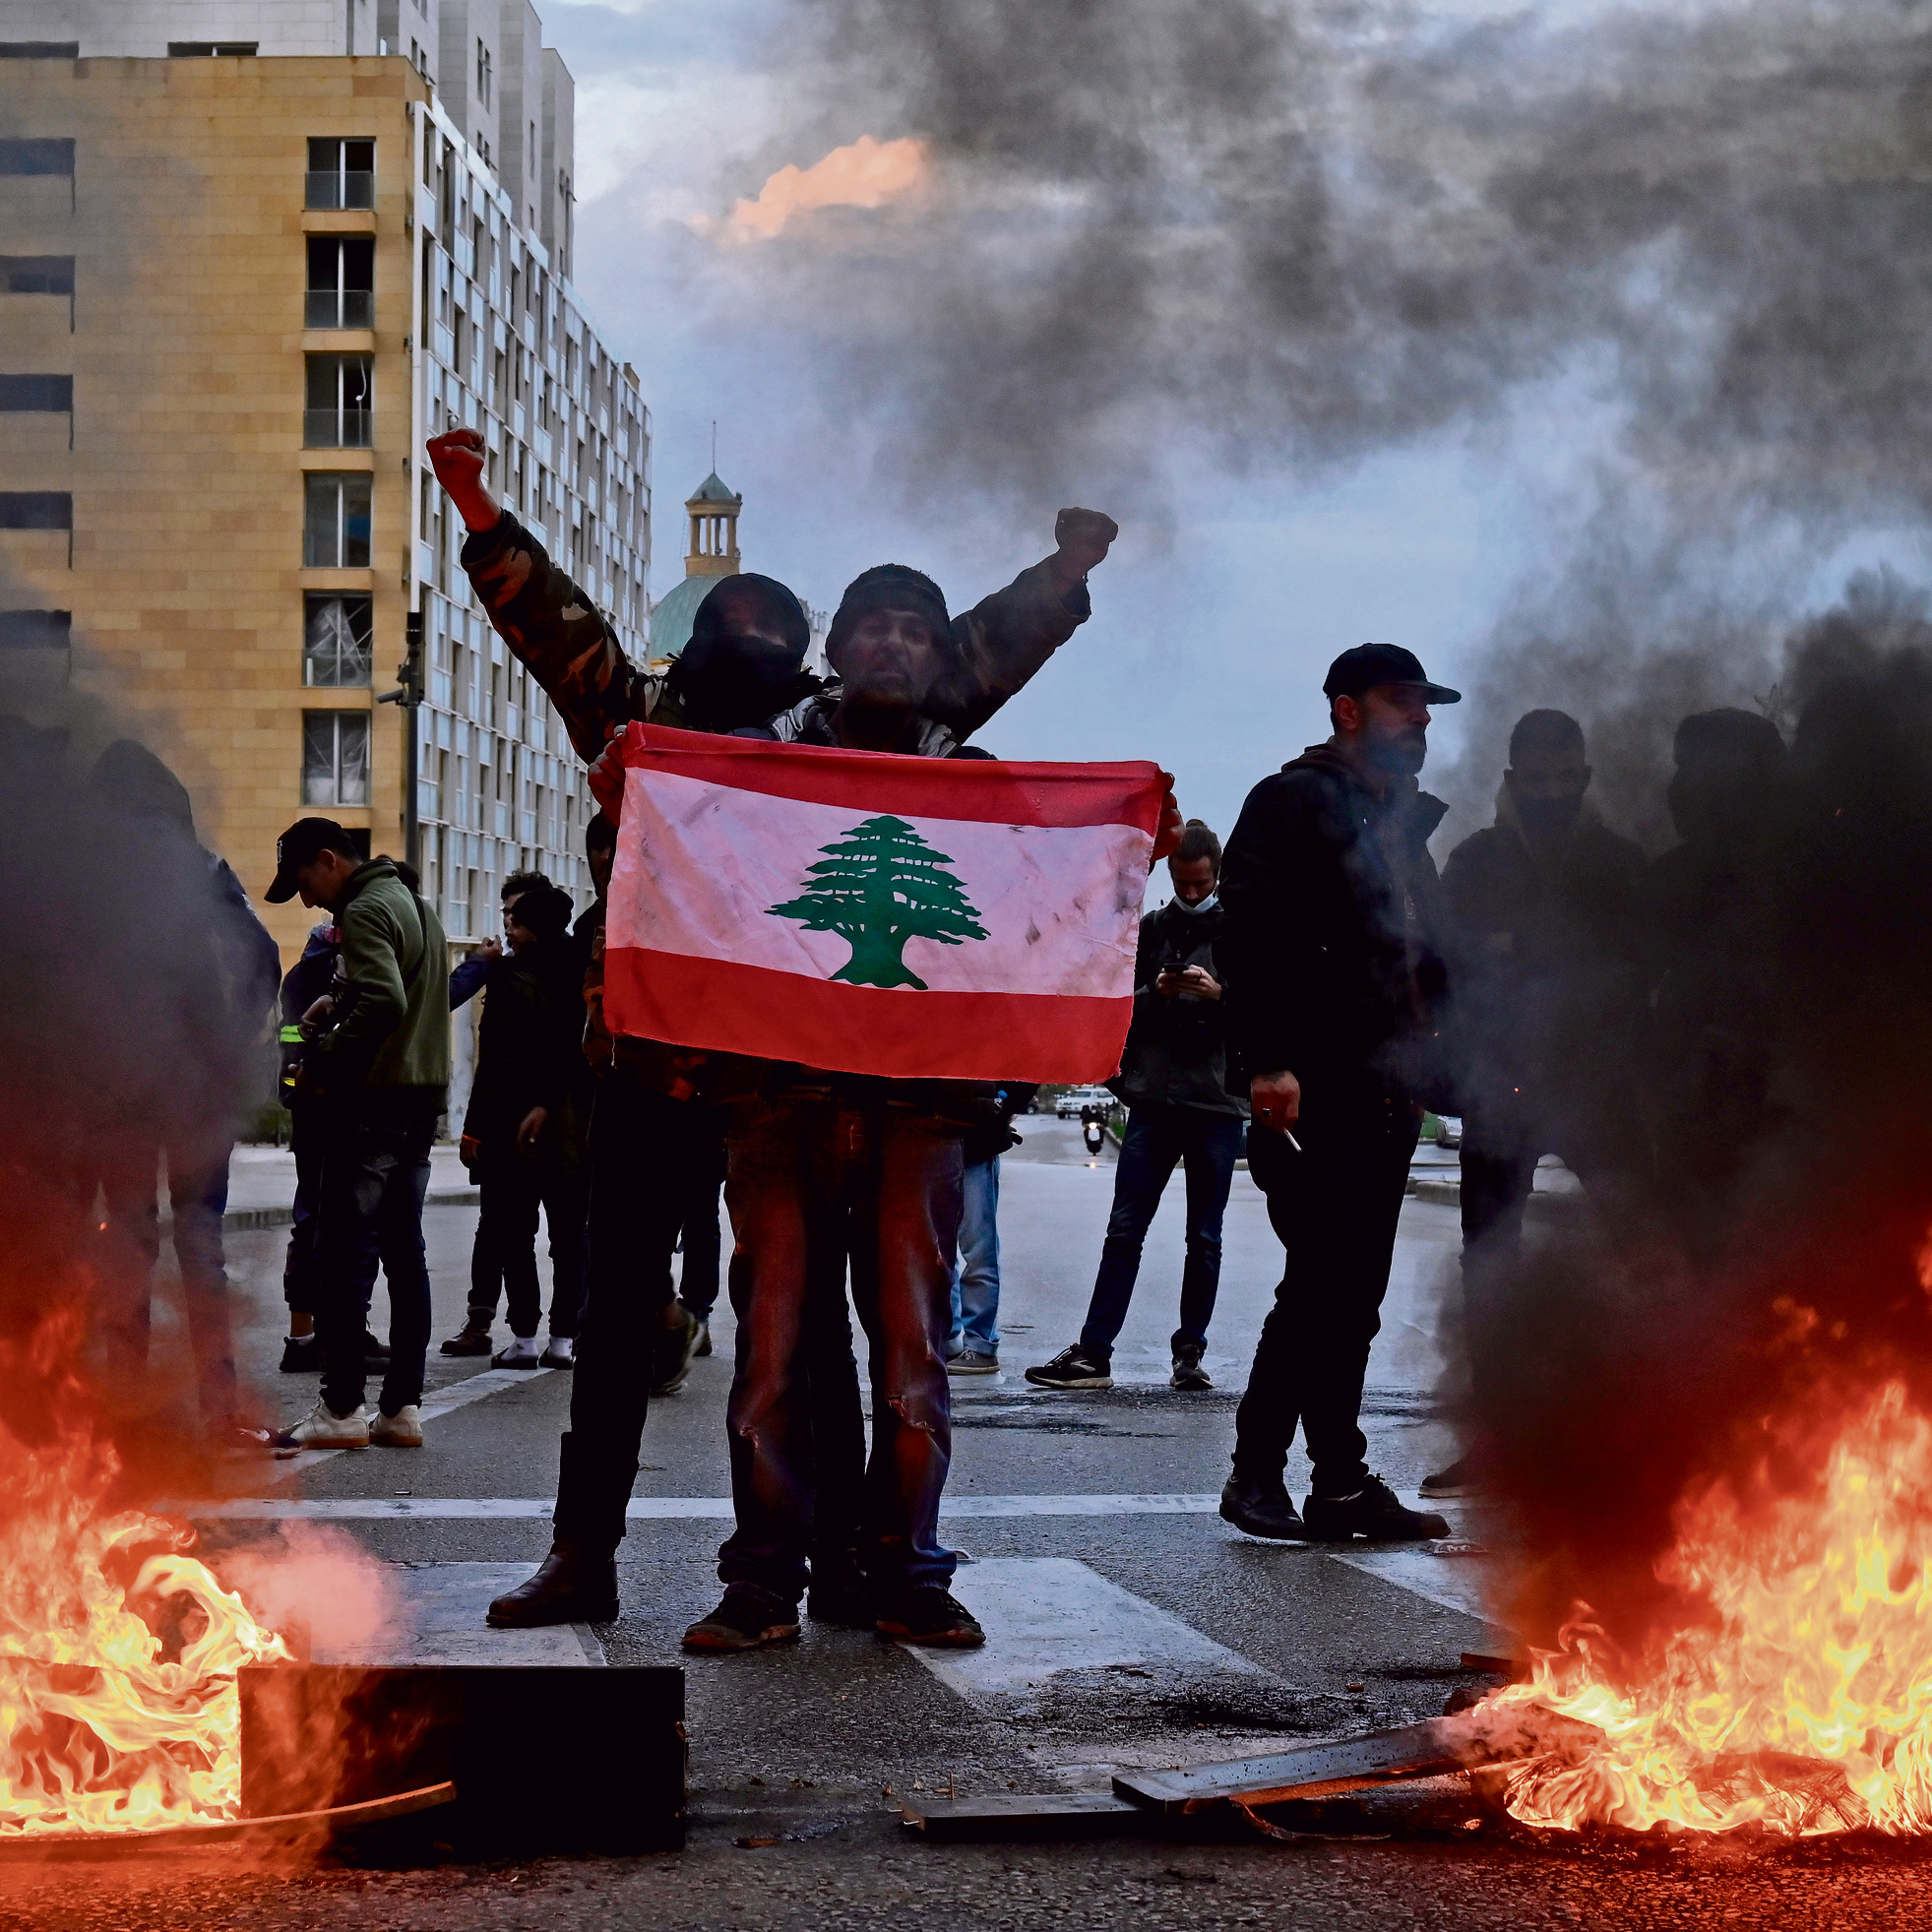 תושבי ביירות מפגינים החודש נגד יוקר המחיה במדינה. "נסראללה לא מבין בתחום הכלכלי. הפיננסים זו נקודה חלשה אצלו" | צילום: אי פי איי